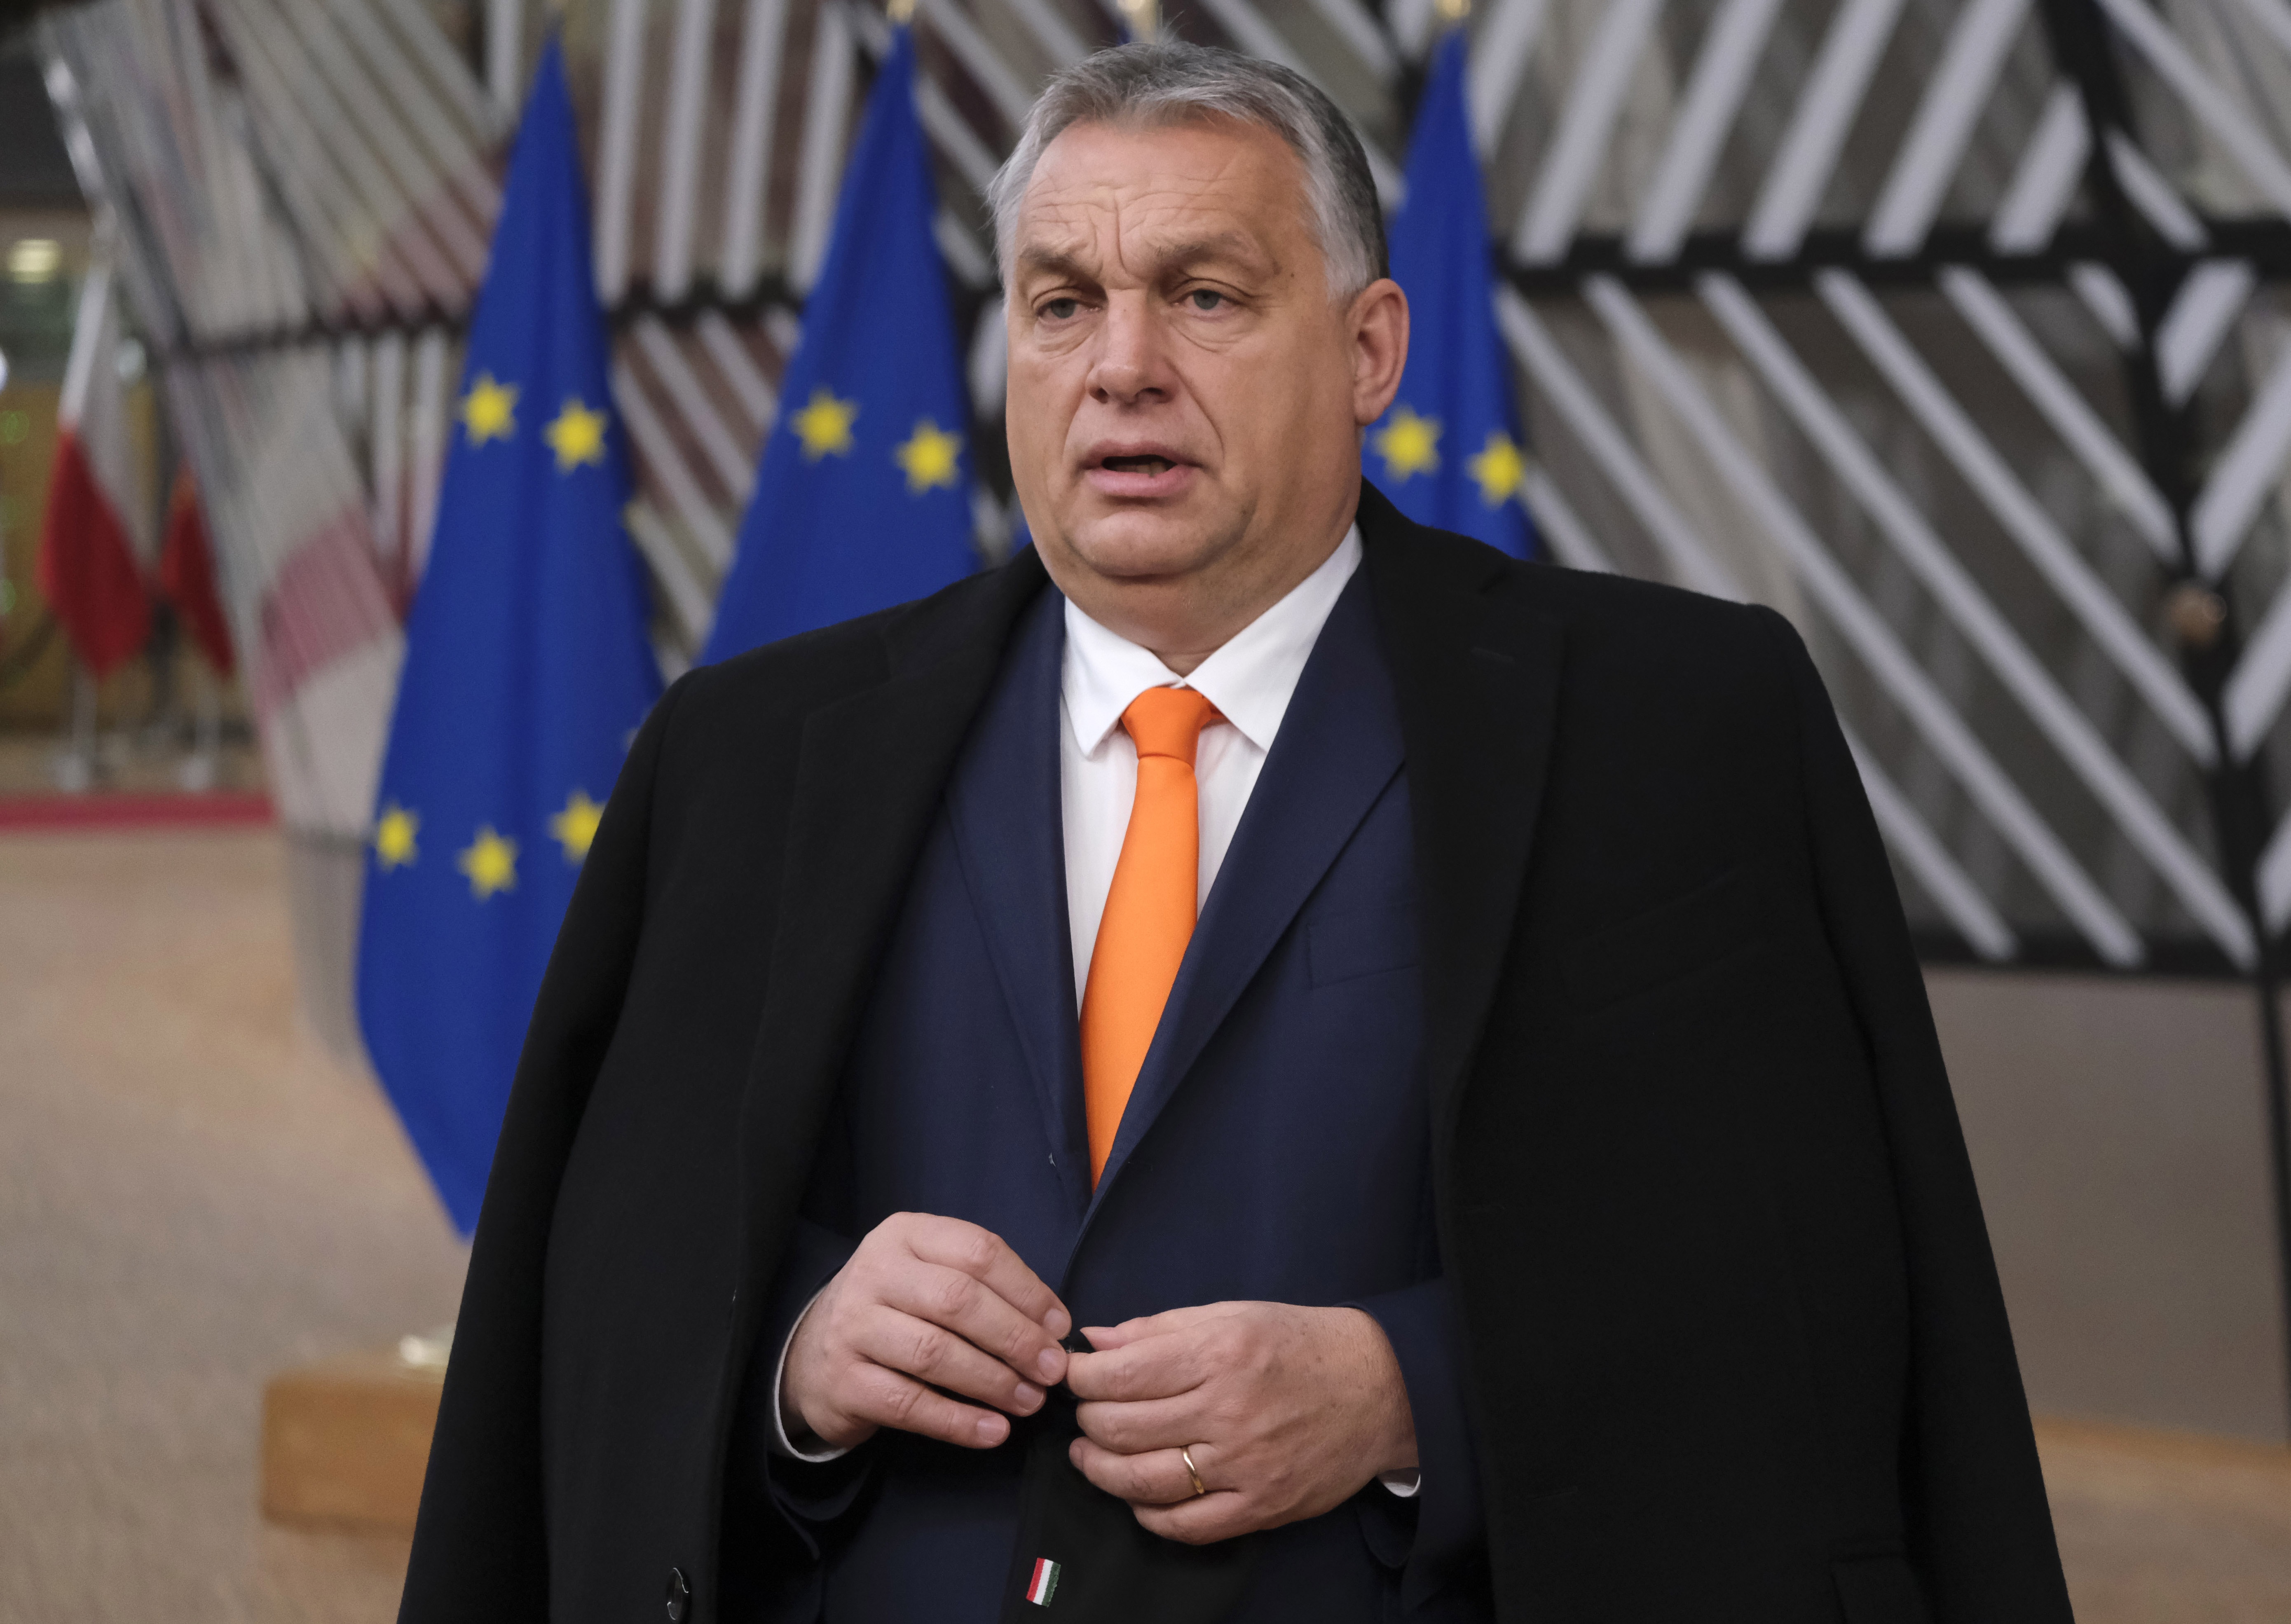 Viktor Orban, primer ministro de Hungría
POLITICA EUROPA HUNGRÍA INTERNACIONAL
MICHAILIDIS/EUC / ZUMA PRESS / CONTACTOPHOTO
